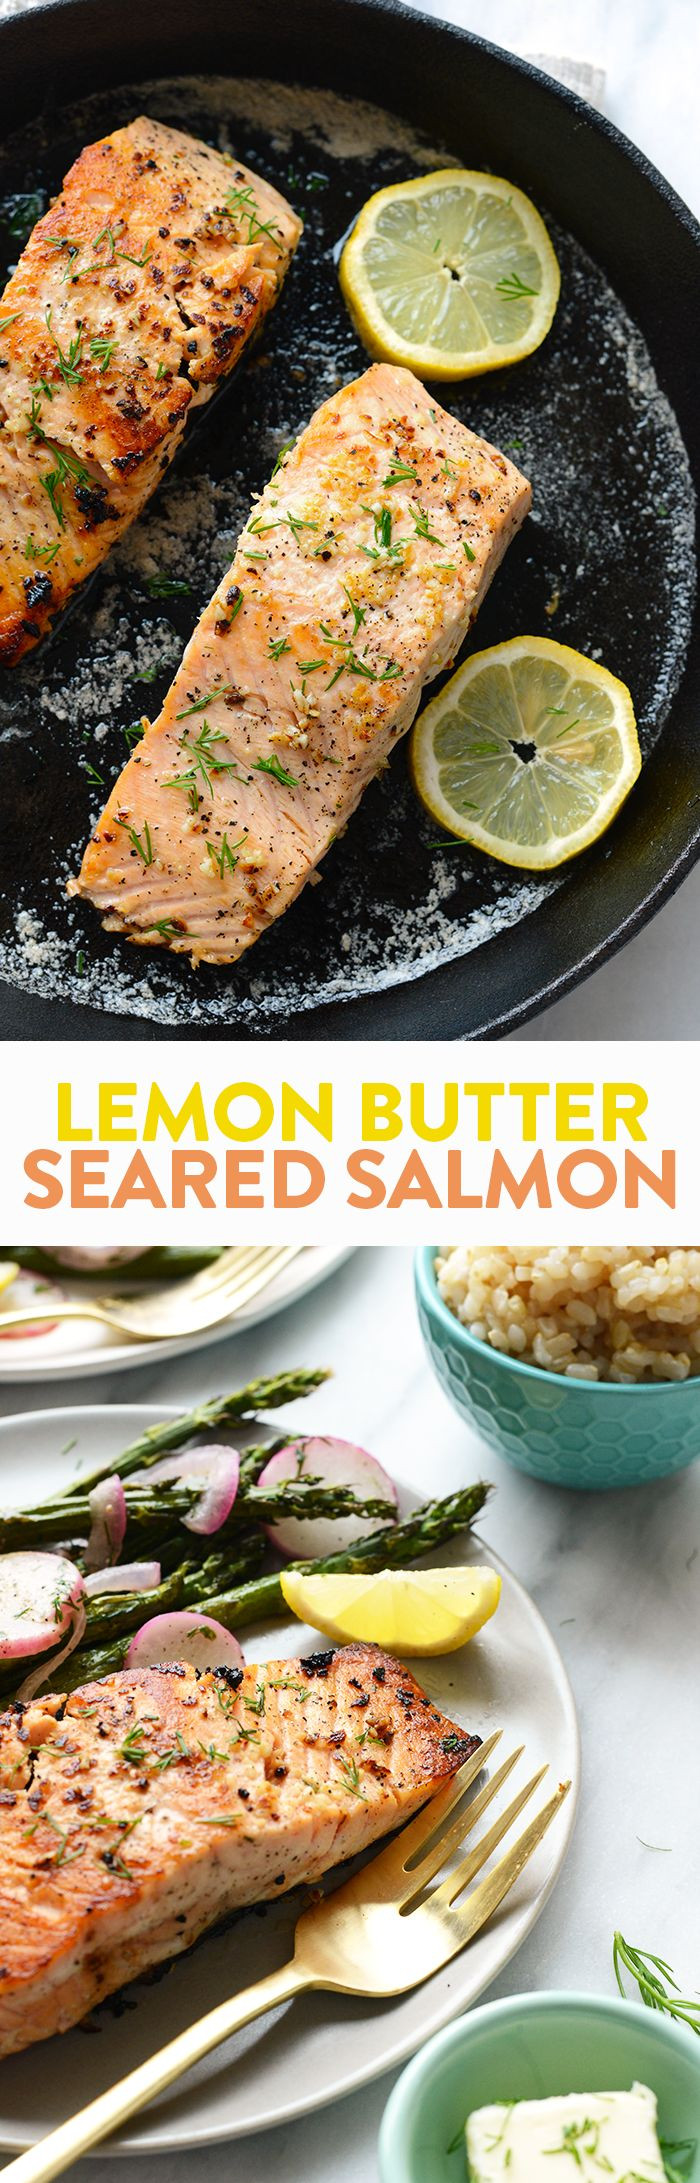 Diabetic Salmon Recipes
 Best 25 Diabetic recipes for dinner ideas on Pinterest